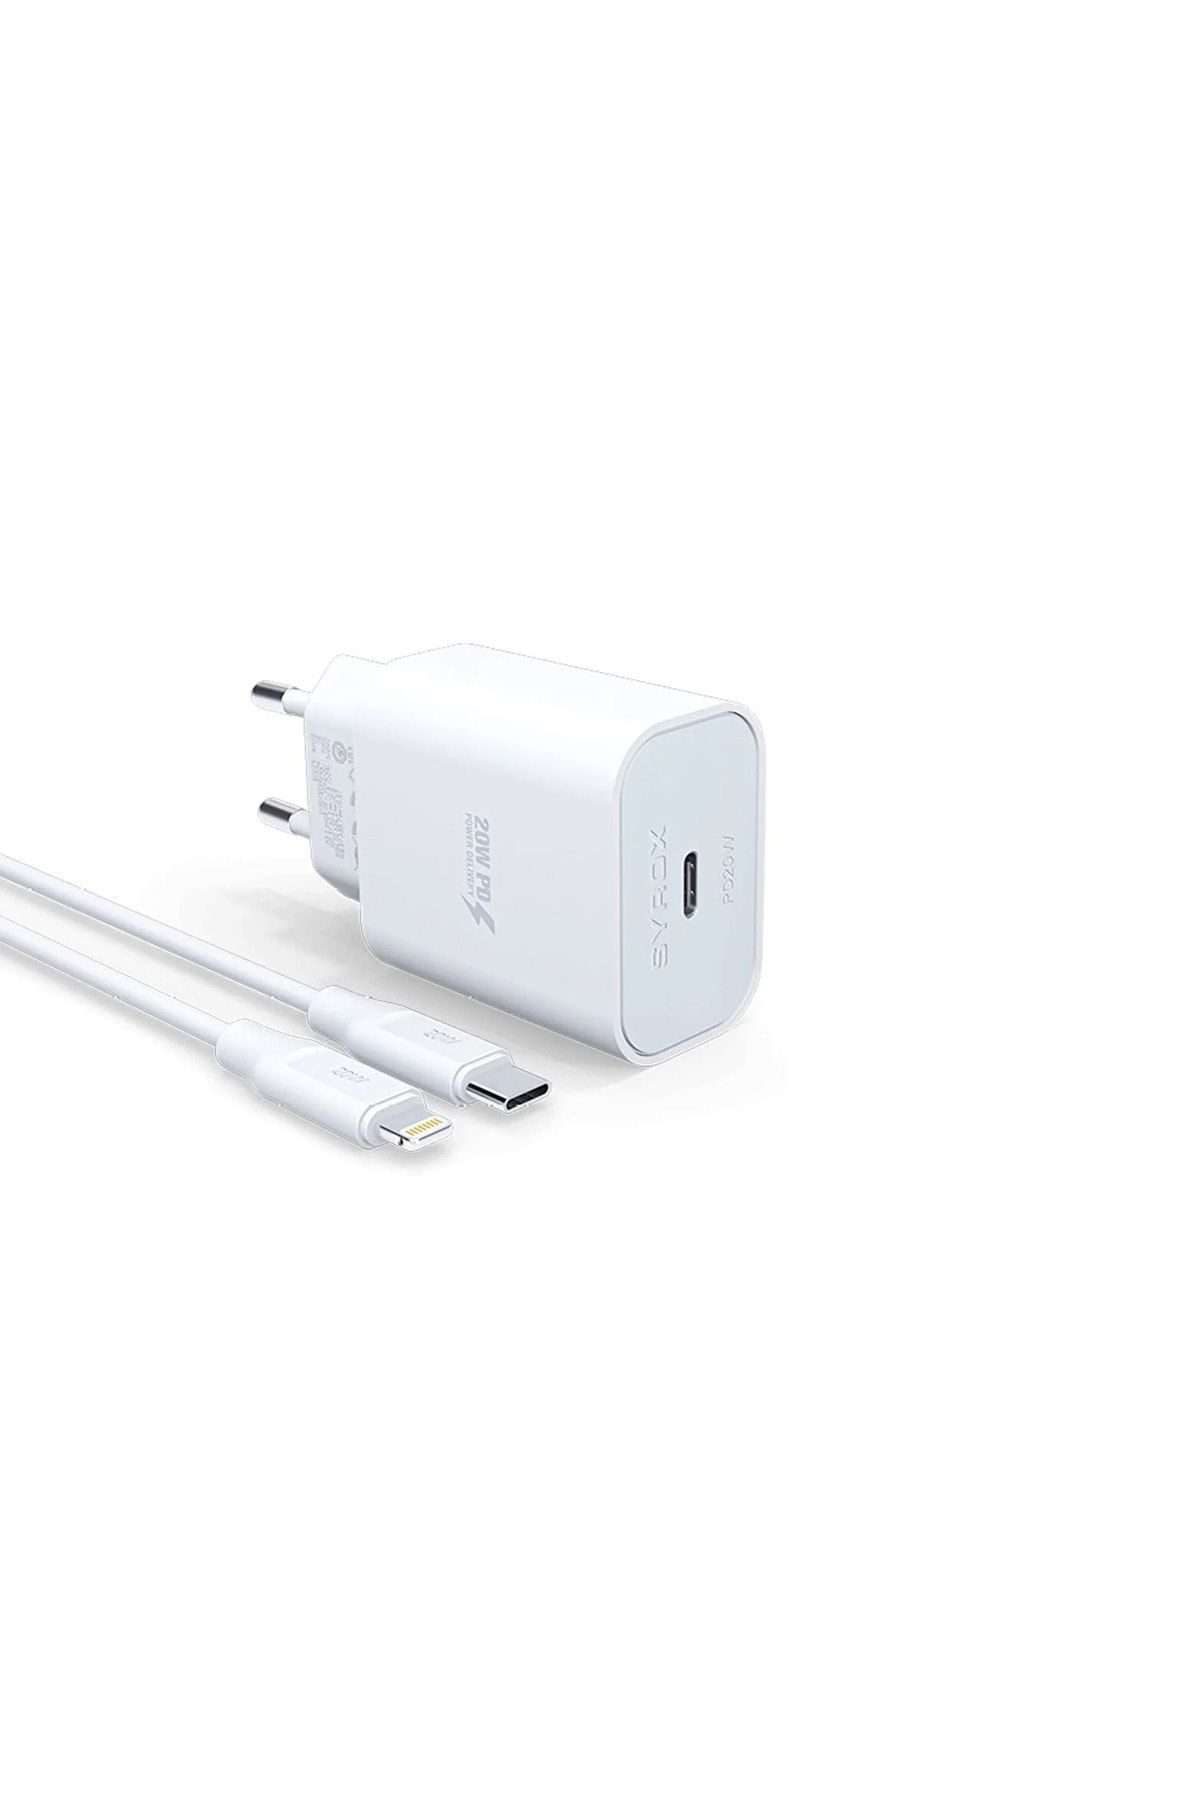 Syrox Apple Iphone 13 Pro Max 5g Uyumlu Hızlı Şarj Cihazı Lightning 20w Şarj Aleti Seti